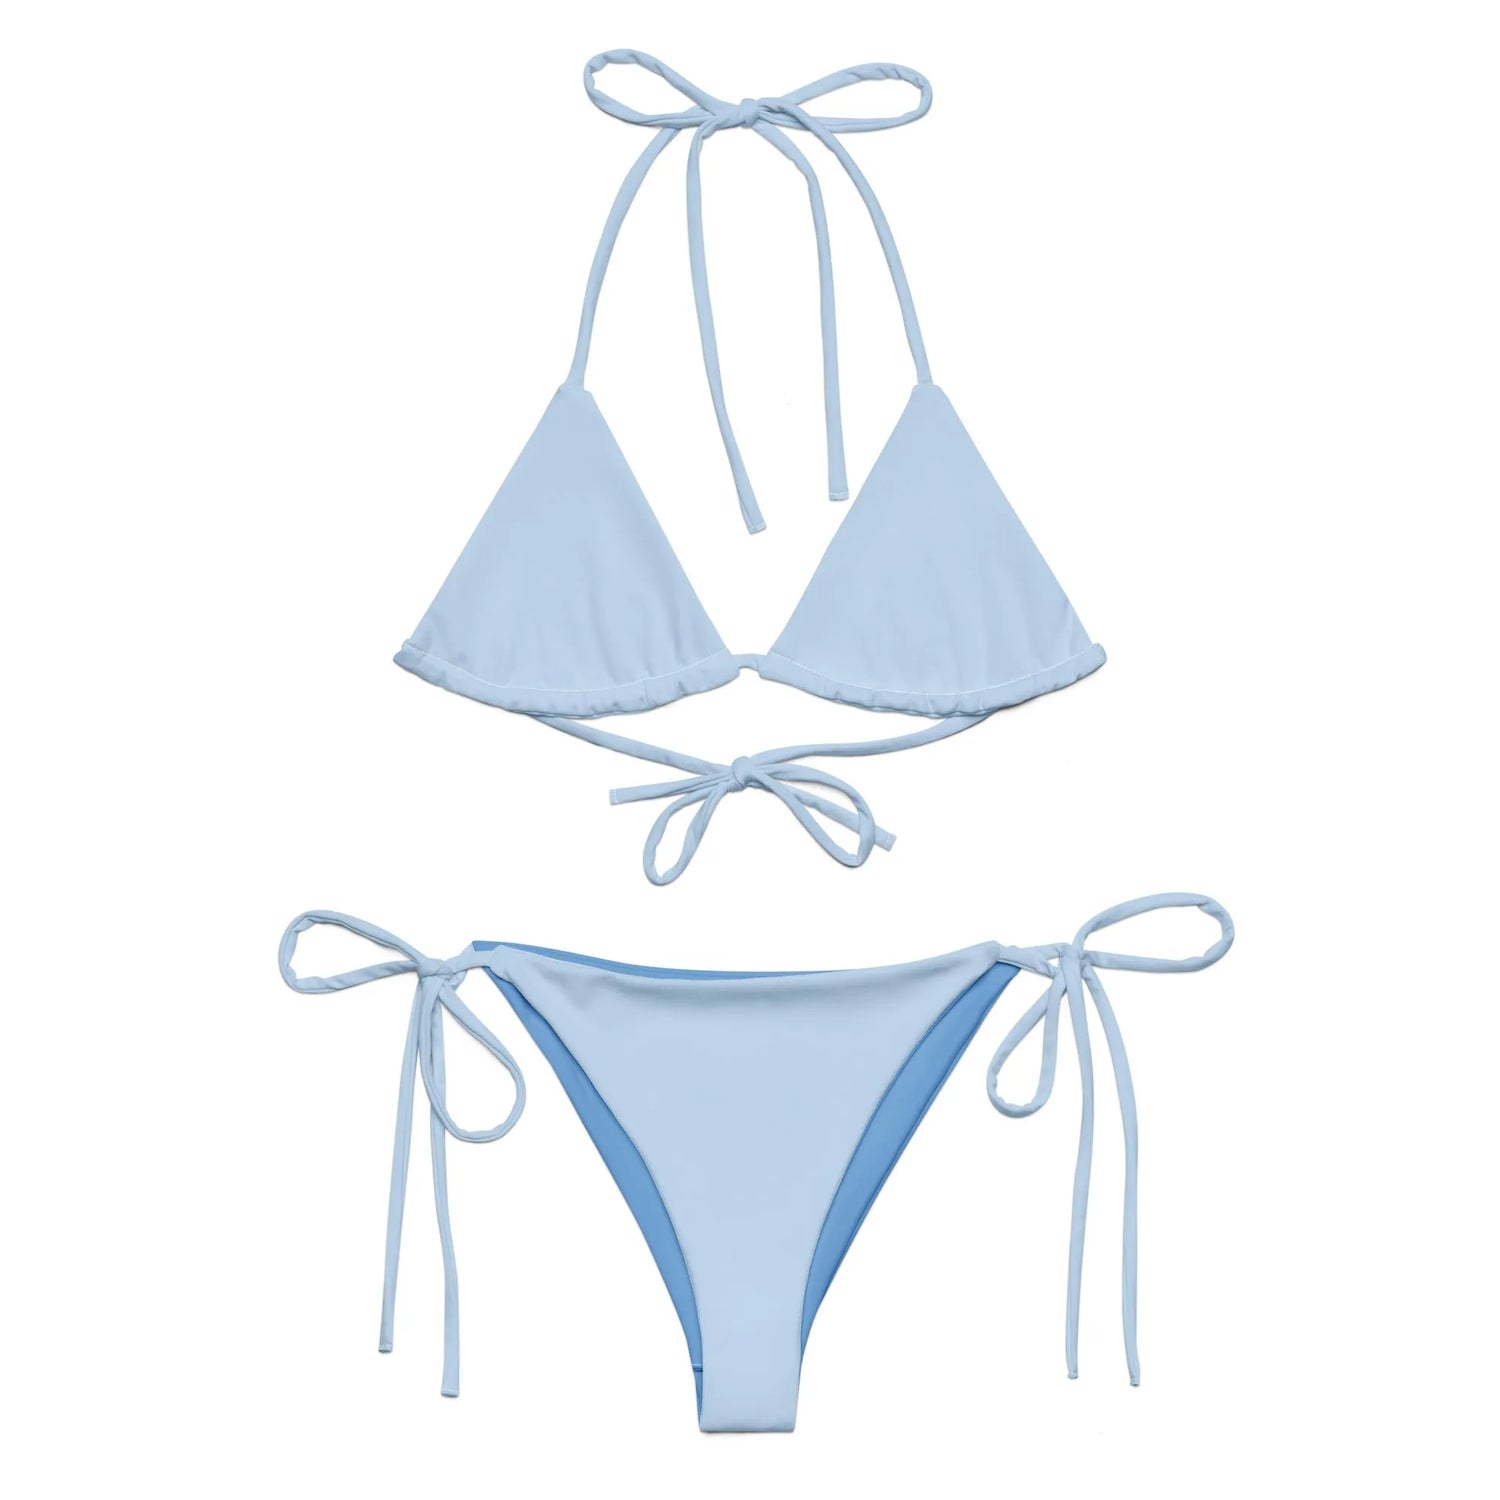 TOV String Bikini Set VIBES (Himmelblau), Bikini Sets, Time Of Vibes